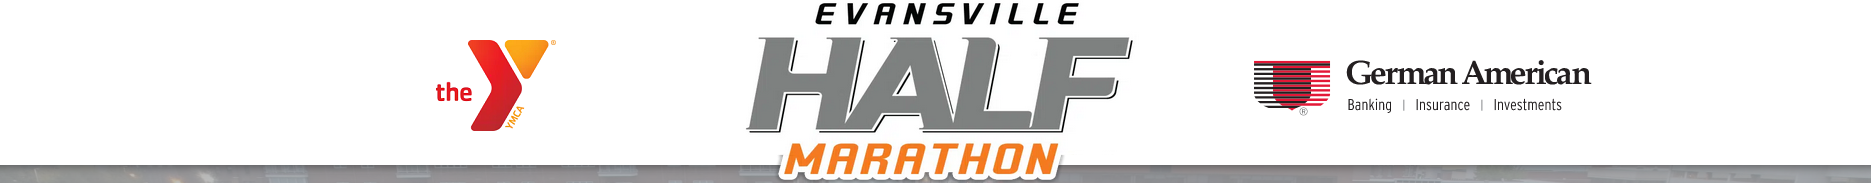 Evansville Half Marathon header